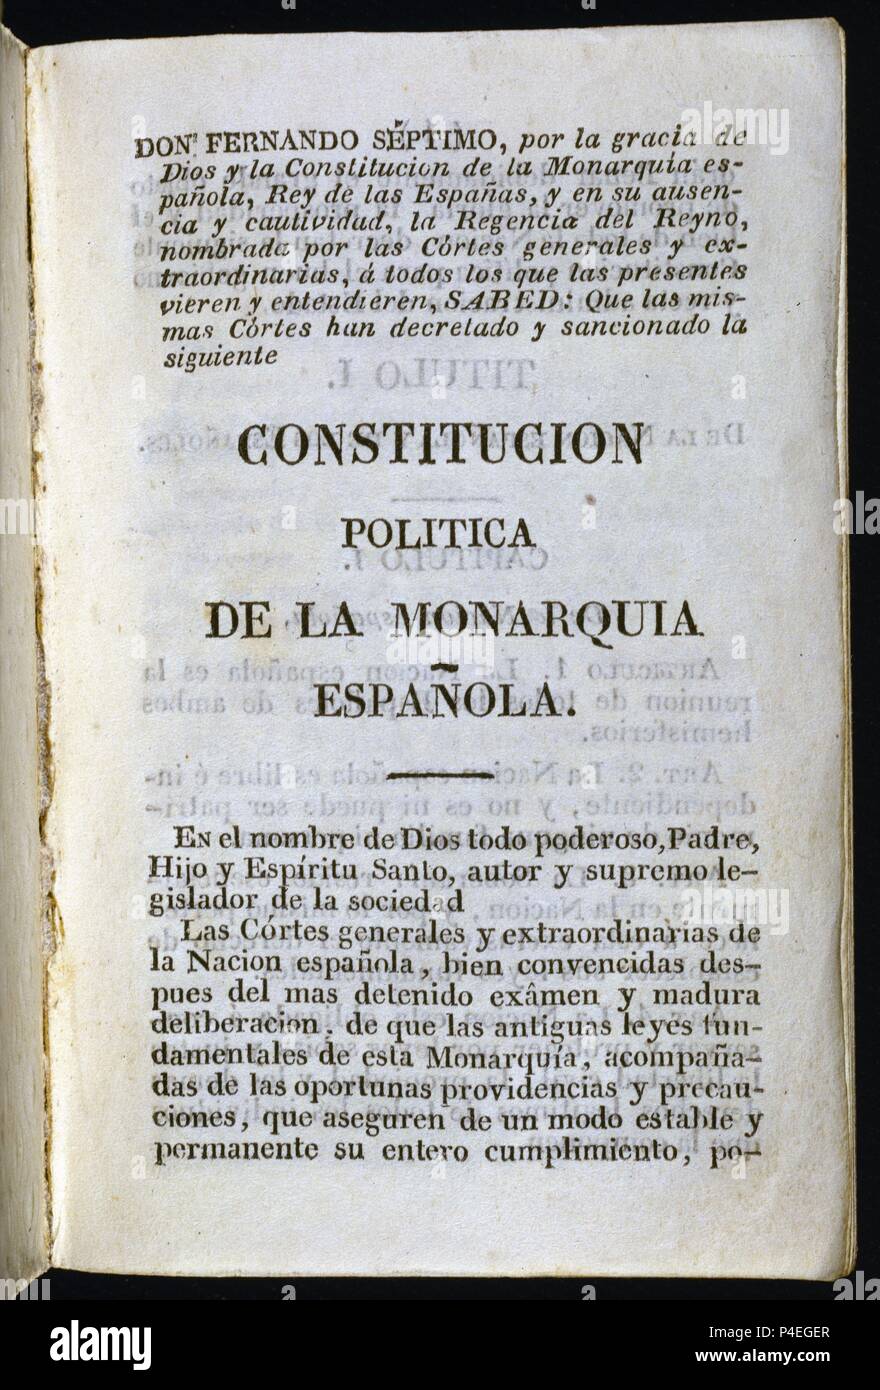 CONSTITUCION POLITICA DE LA MONARQUIA ESPAÑOLA 1812-PORTADA. Location: CONGRESO DE LOS DIPUTADOS-BIBLIOTECA, MADRID, SPAIN. Stock Photo